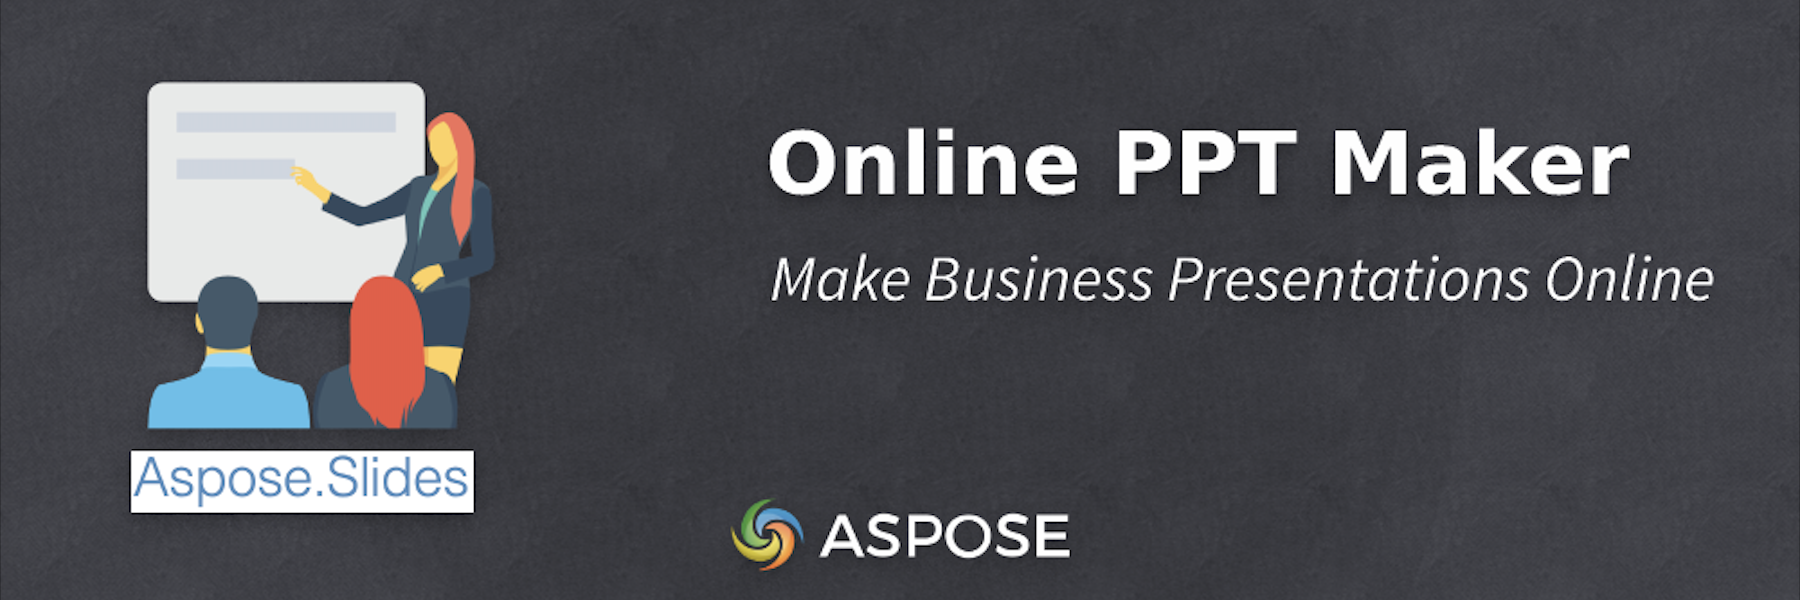 PPT Maker آنلاین - ارائه کسب و کار آنلاین